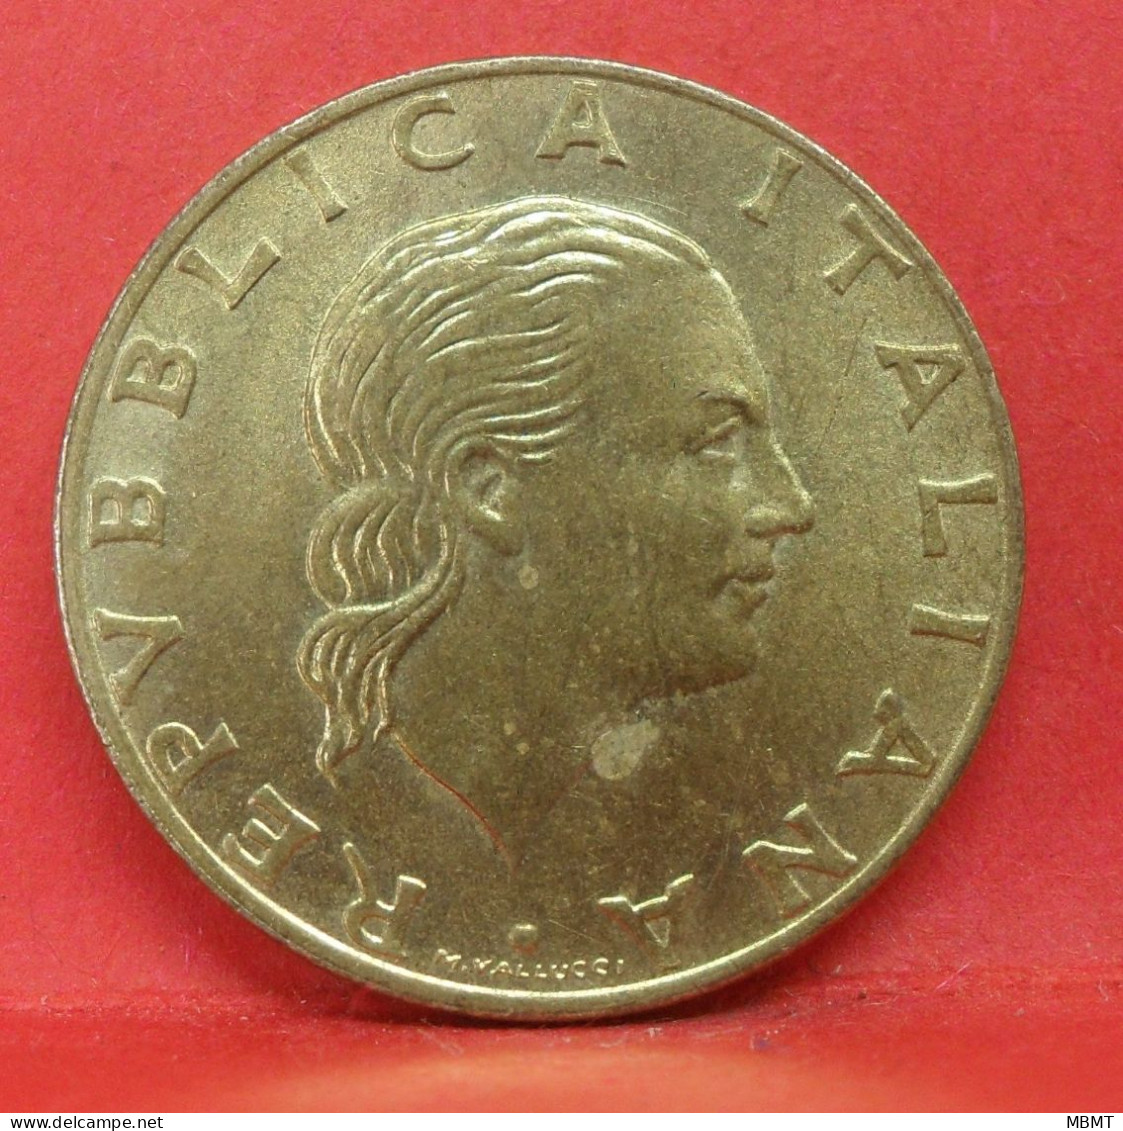 200 Lire 1992 - TTB - Pièce De Monnaie Italie - Article N°3589 - Gedenkmünzen